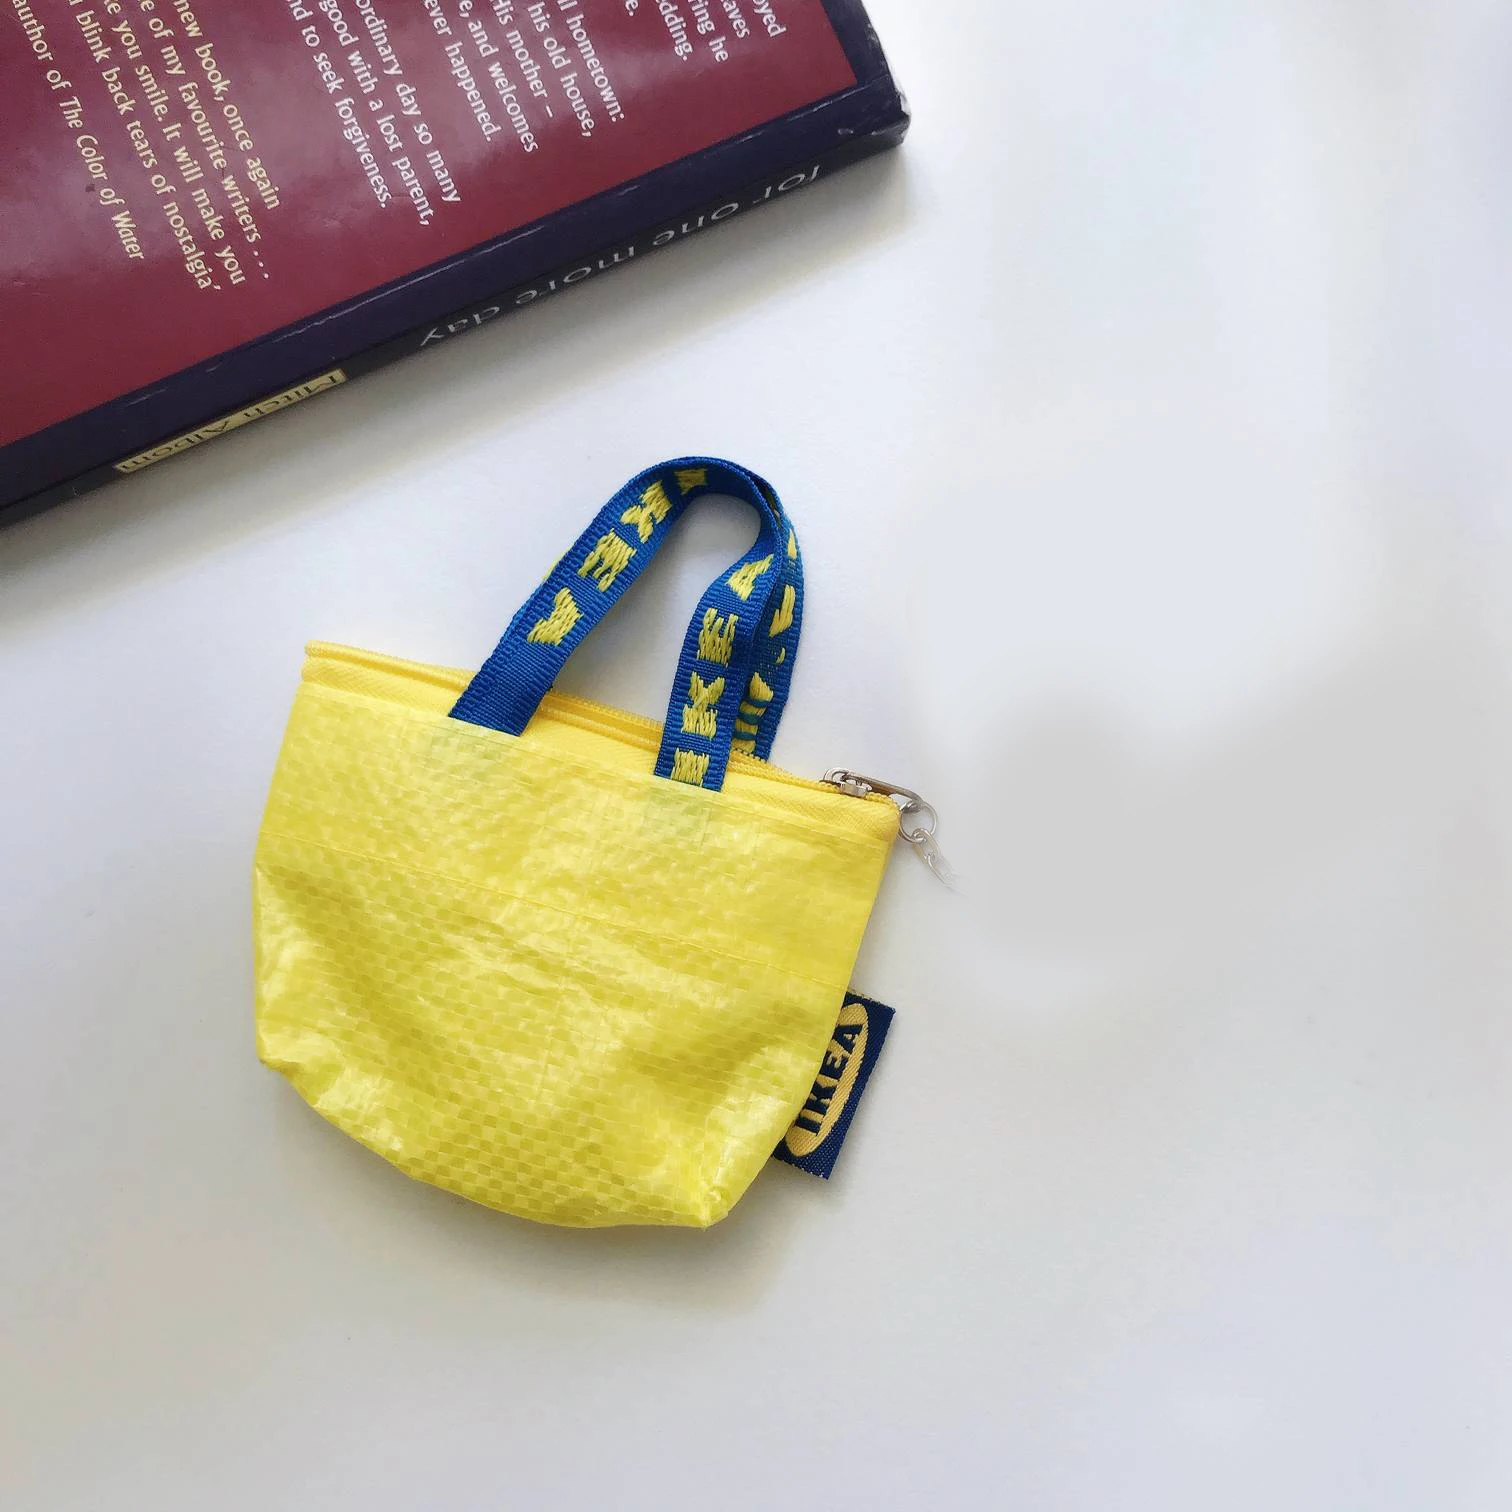 Чехол для Airpods, роскошный, для хранения, беспроводной, для наушников, силиконовый чехол, милый, мини, для iPhone, USB кабель, аксессуары, сумка для хранения - Цвет: A1 Small bag